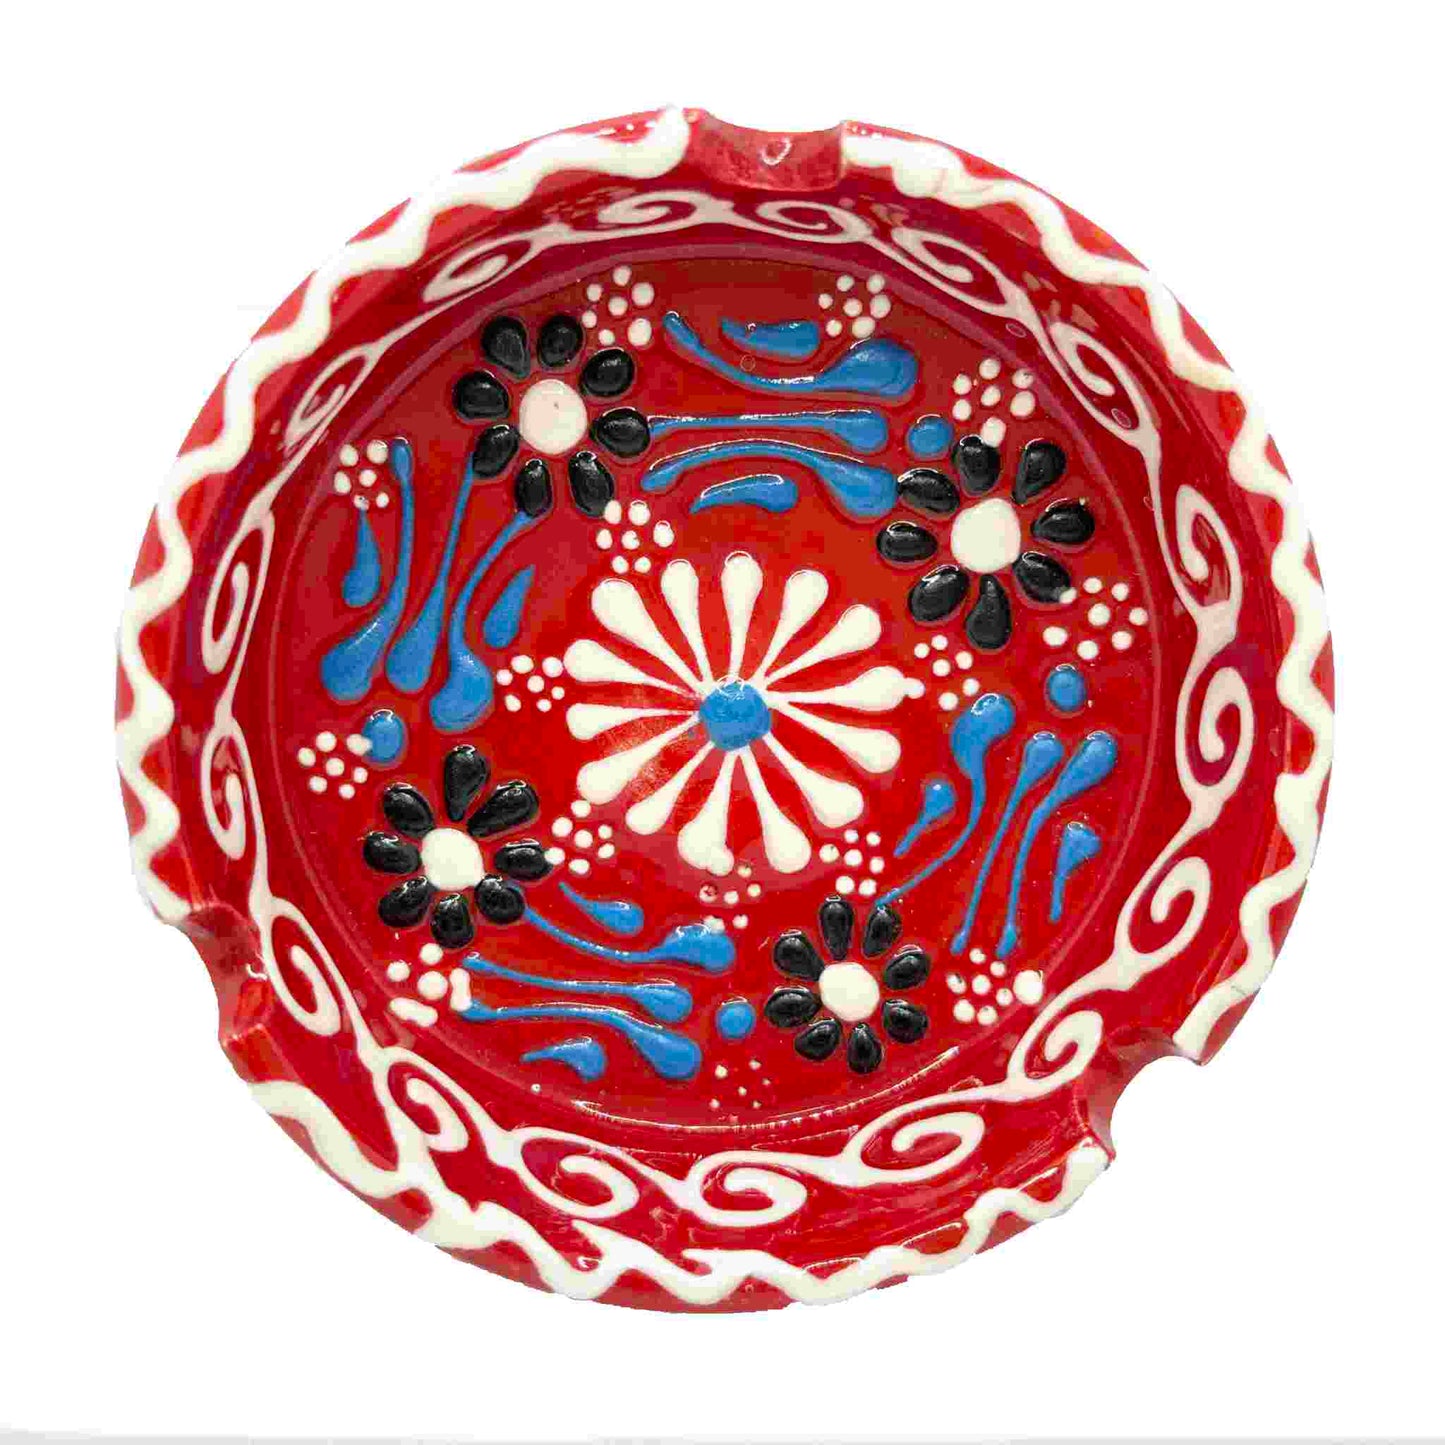 Cenicero de cerámica turca, artesanal, grande Lace rojo